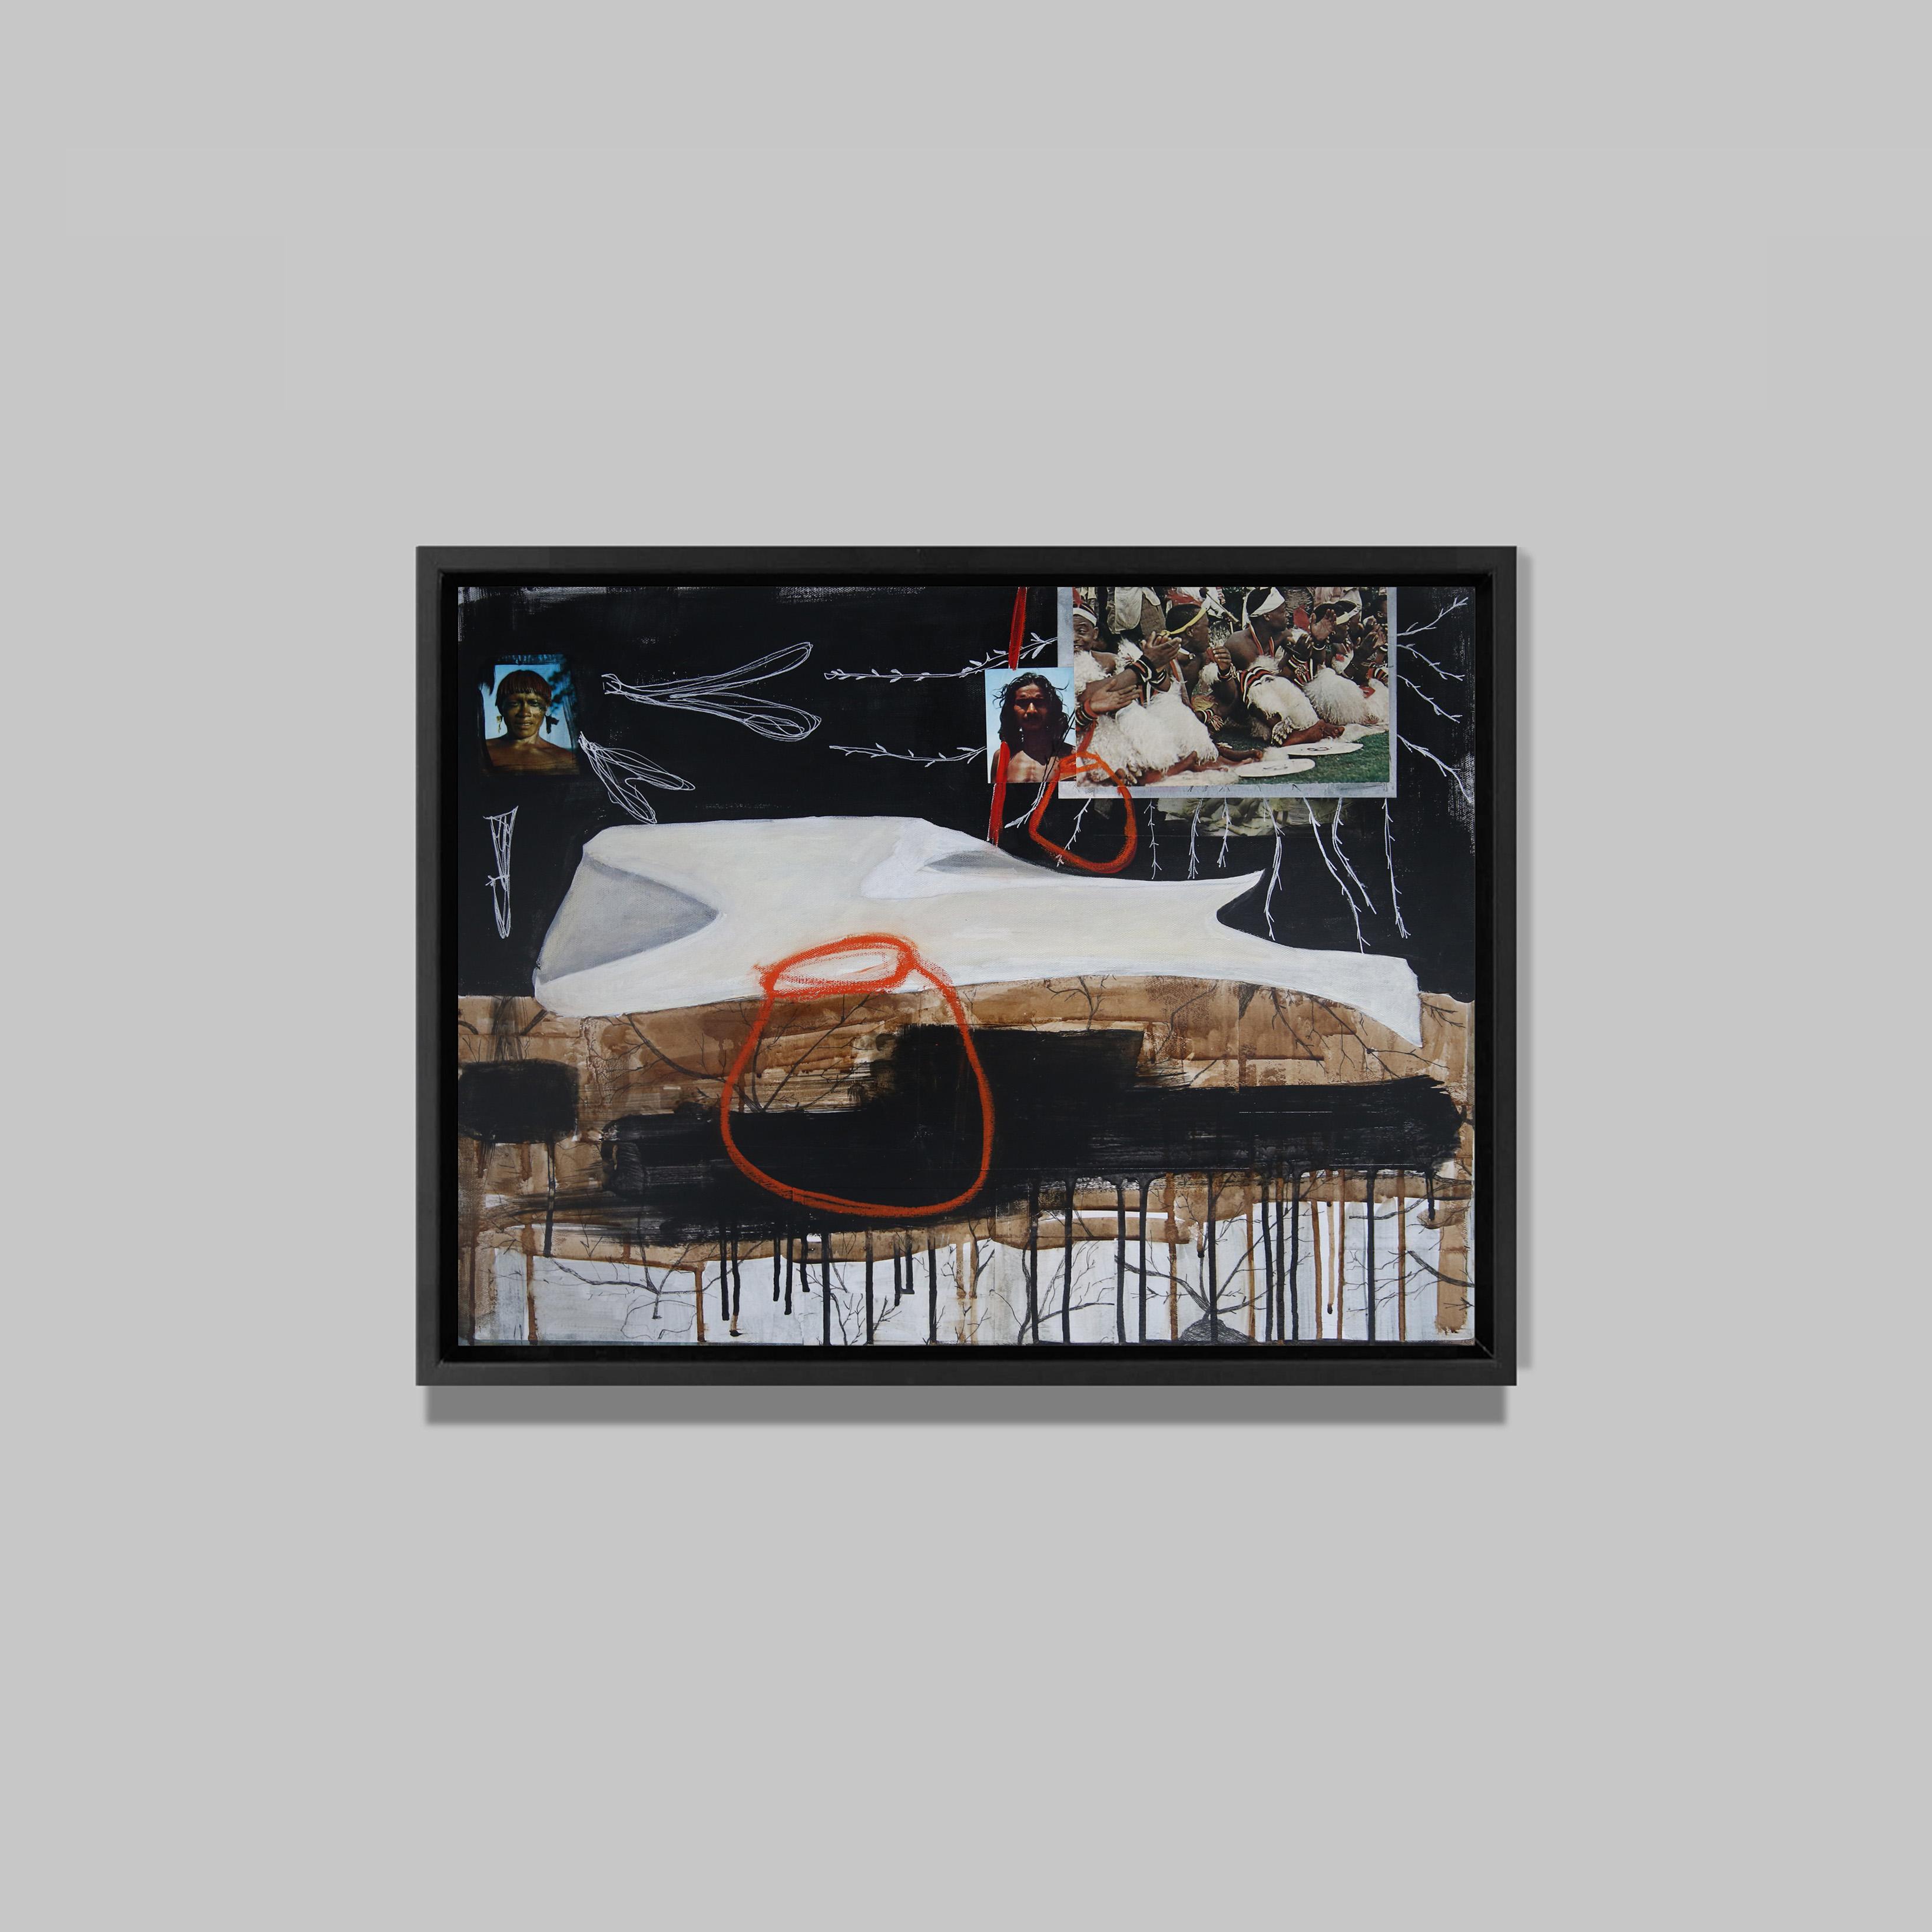 Le feu du dedans I, 2015
Acrylique et collages sur toile 
50 x 60 cm